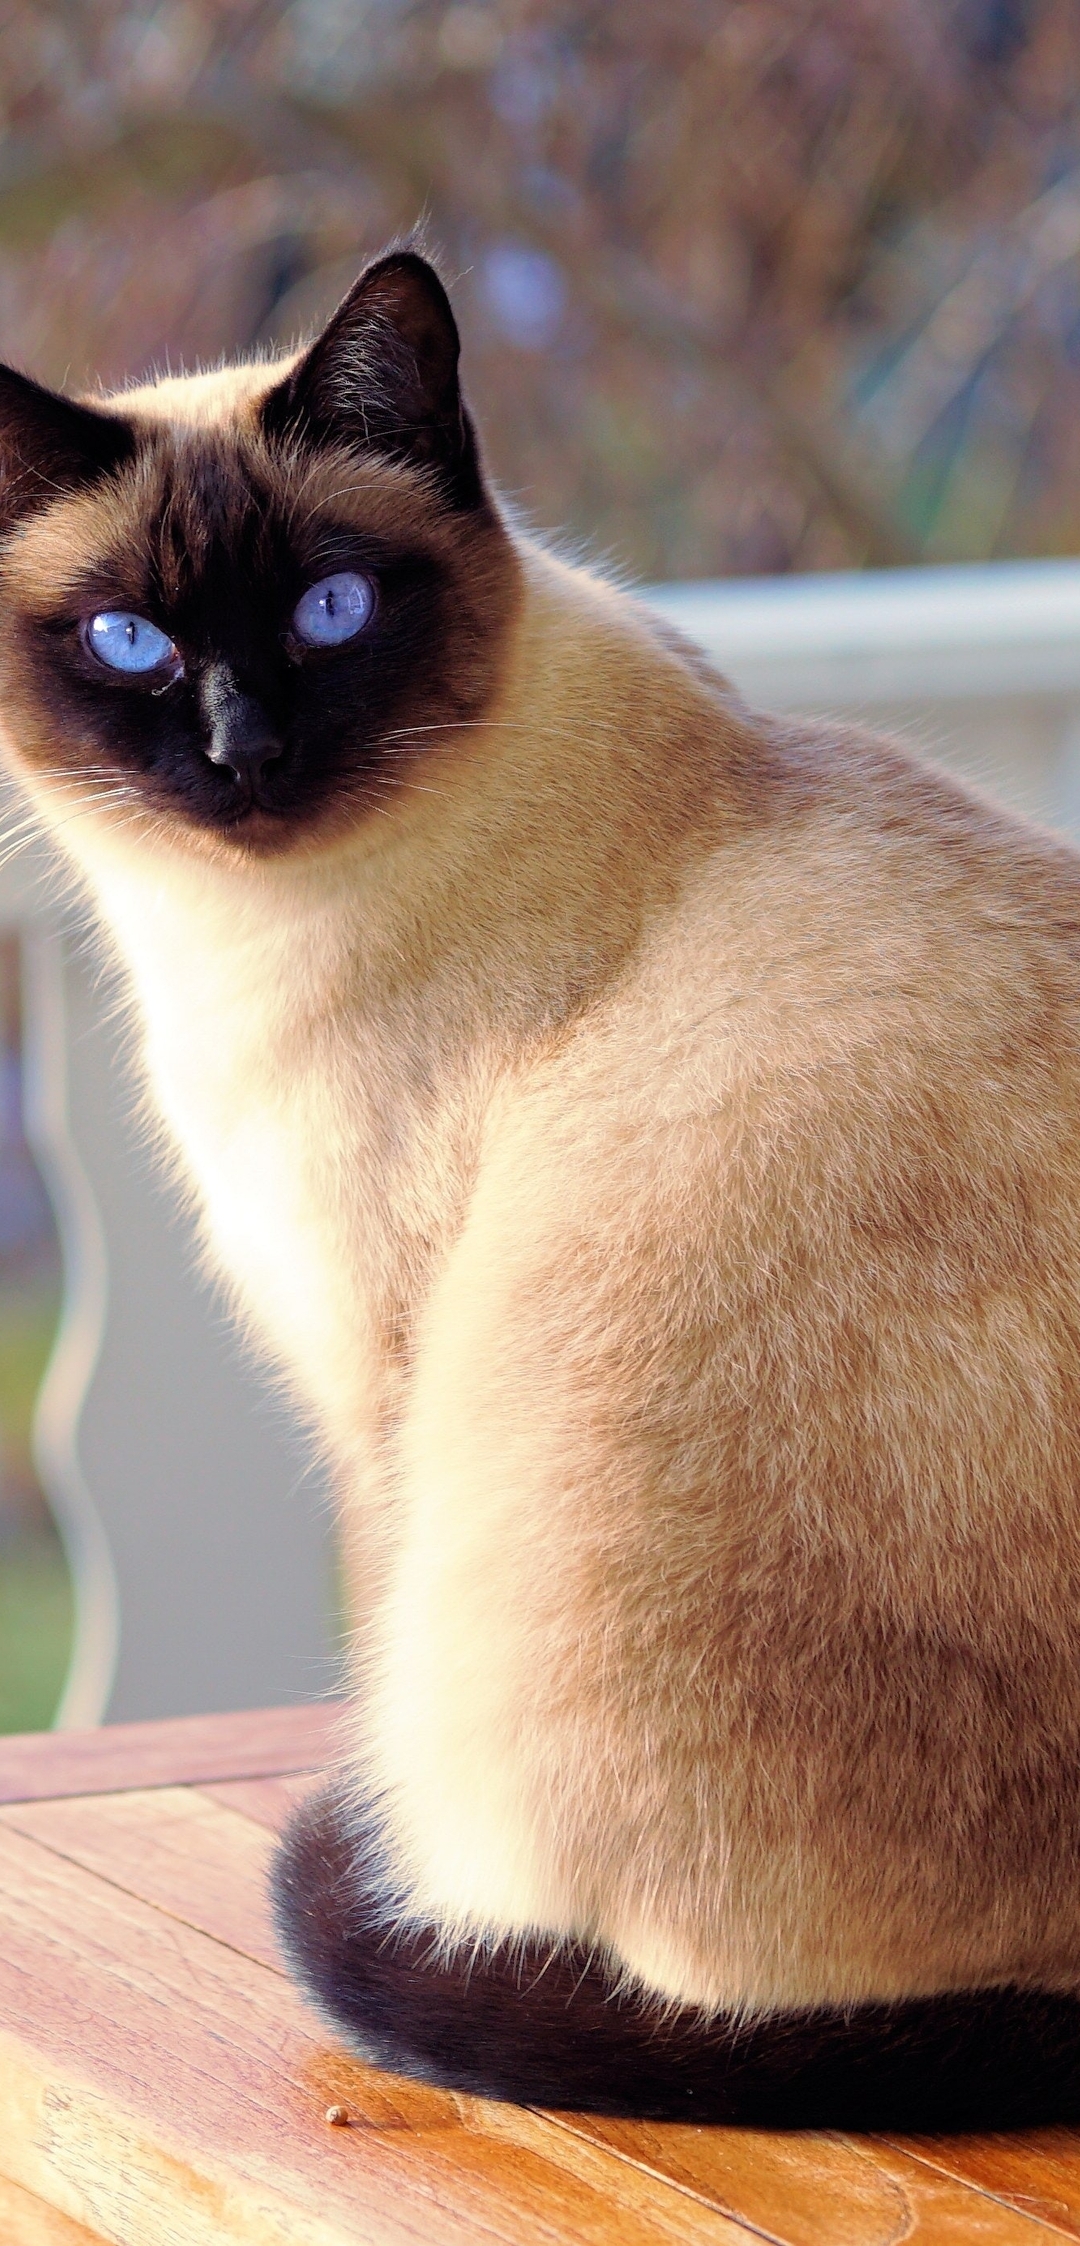 Картинка: Кошка, сиамская, шерсть, мордочка, взгляд, голубые, глаза, стол, сидит